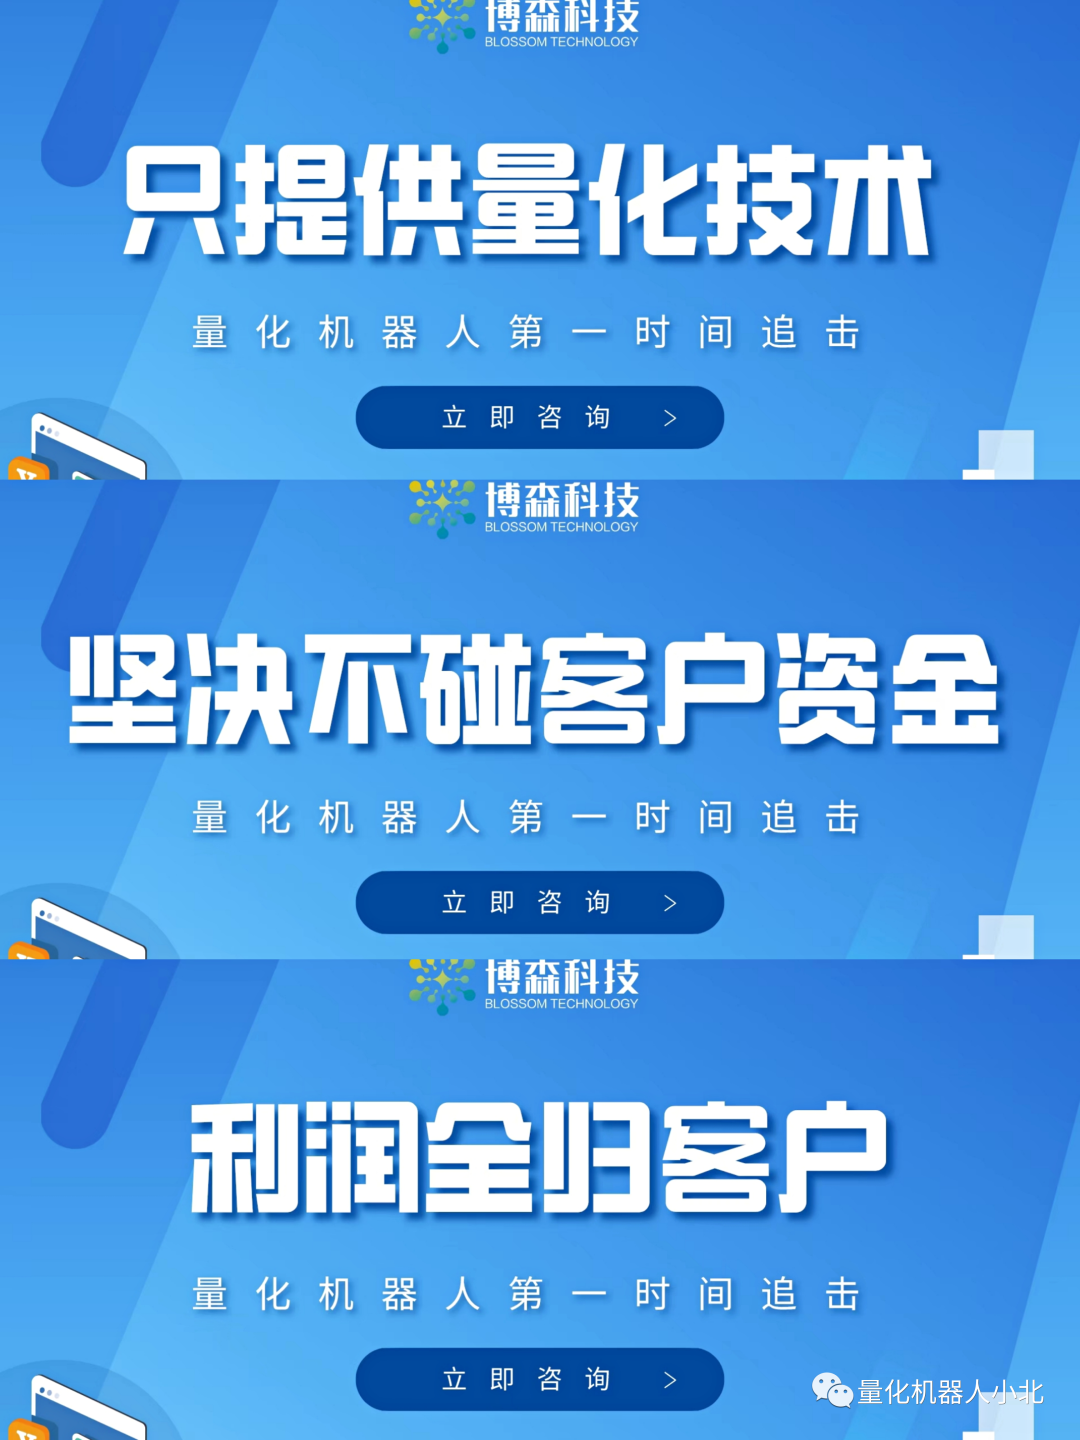 比特币交易网站_现在中国还允许比特币交易那_香港允许比特币交易吗